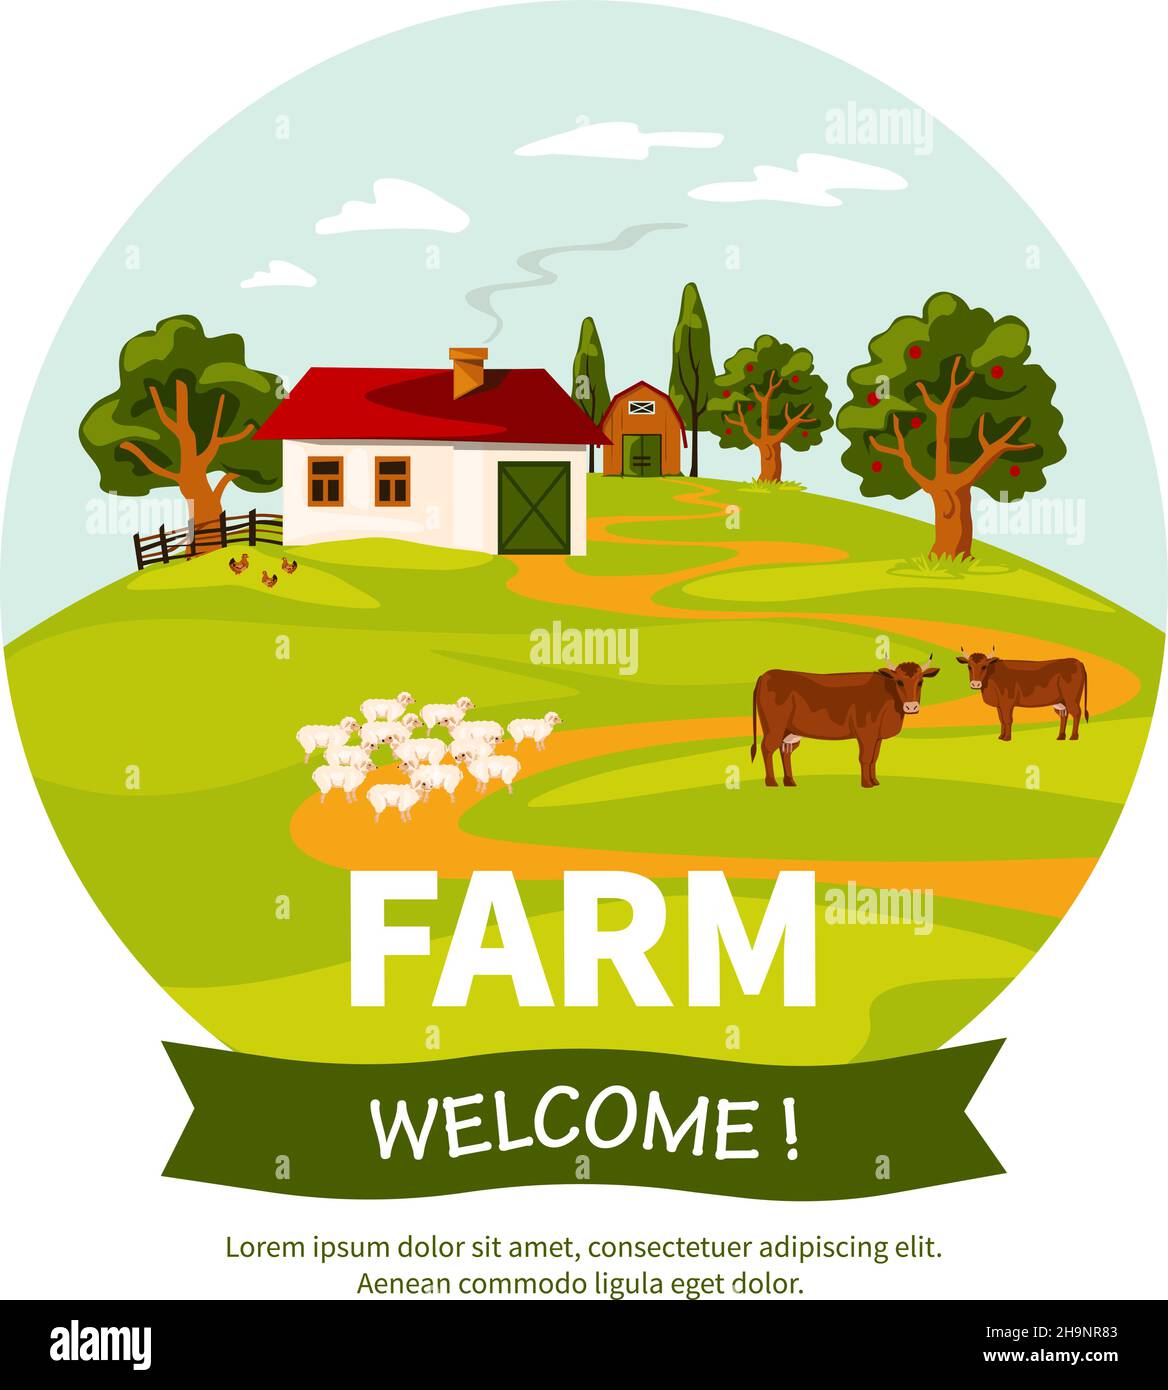 Belle affiche de paysage de ferme avec des moutons et des vaches de ferme illustration du vecteur plat herbe verte Illustration de Vecteur